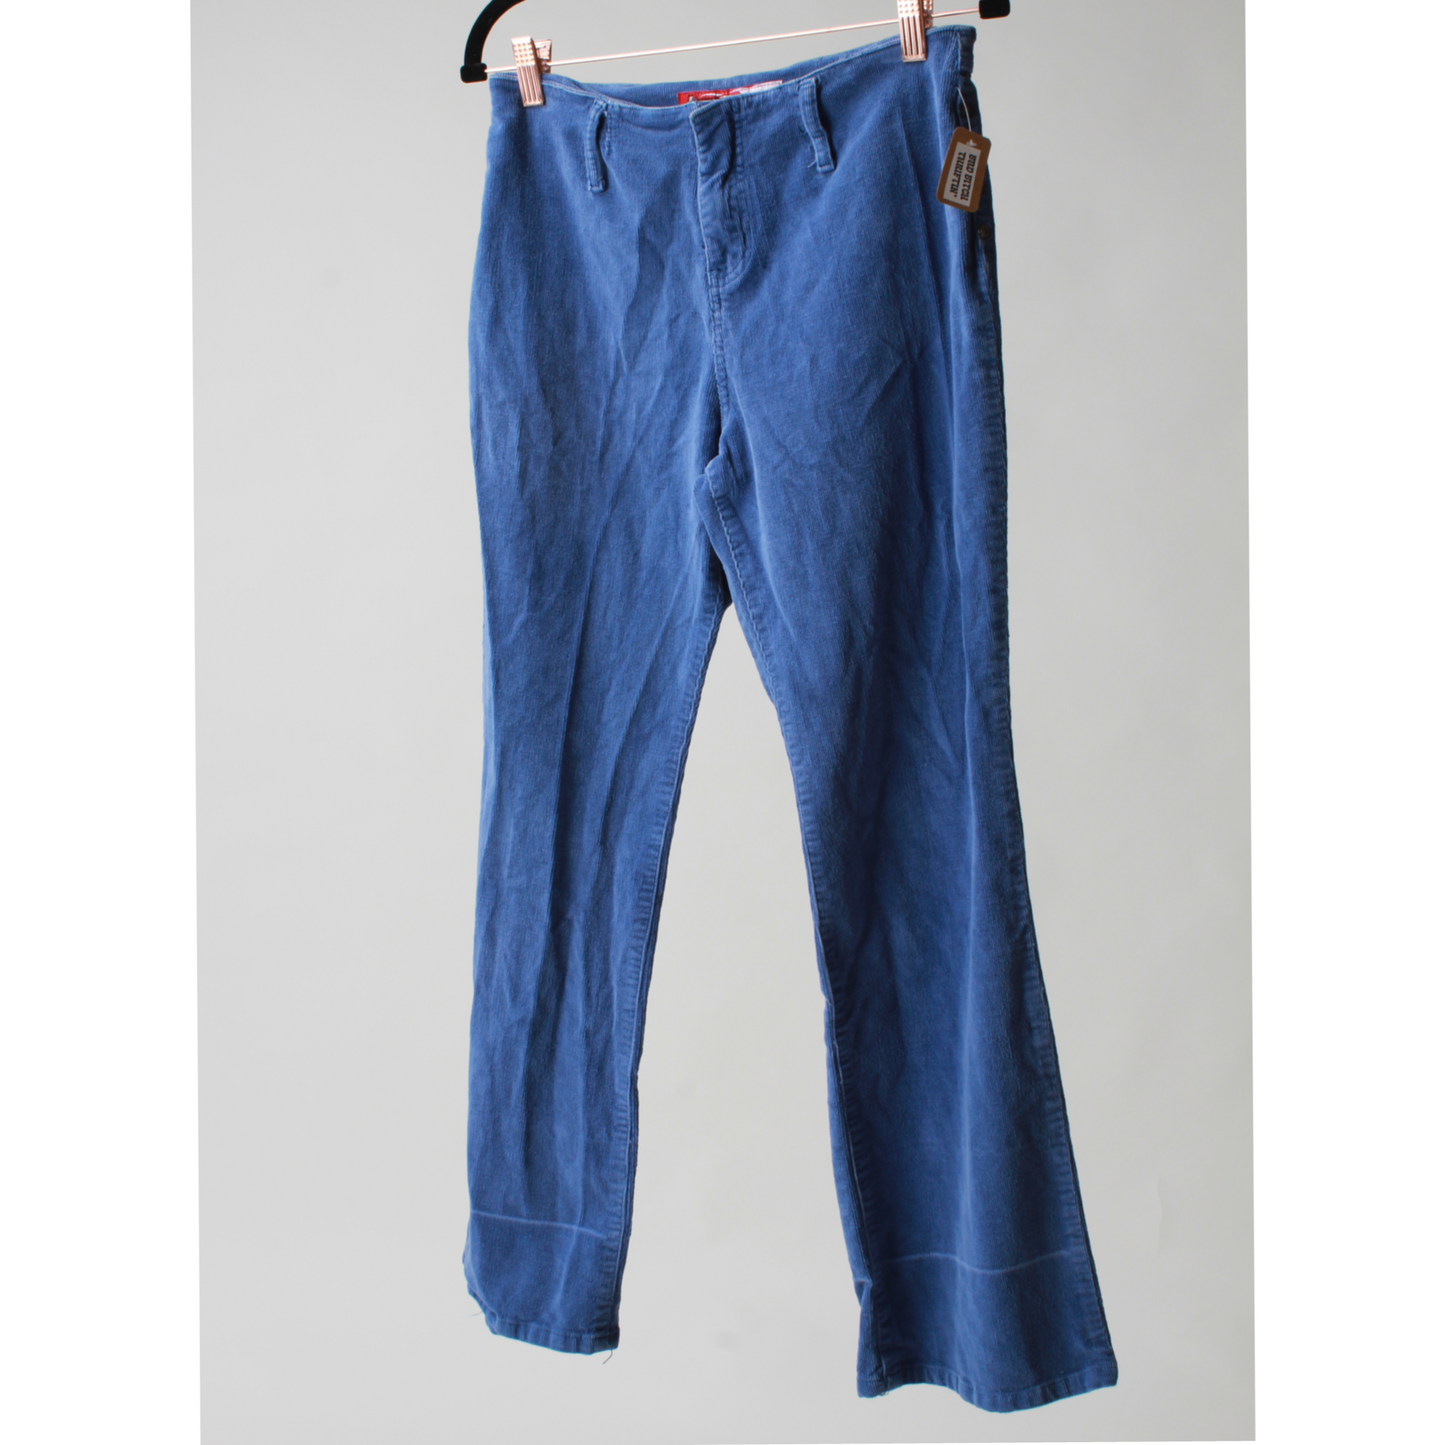 Purple Corduroy Pants (Lazer Jeans) (28")